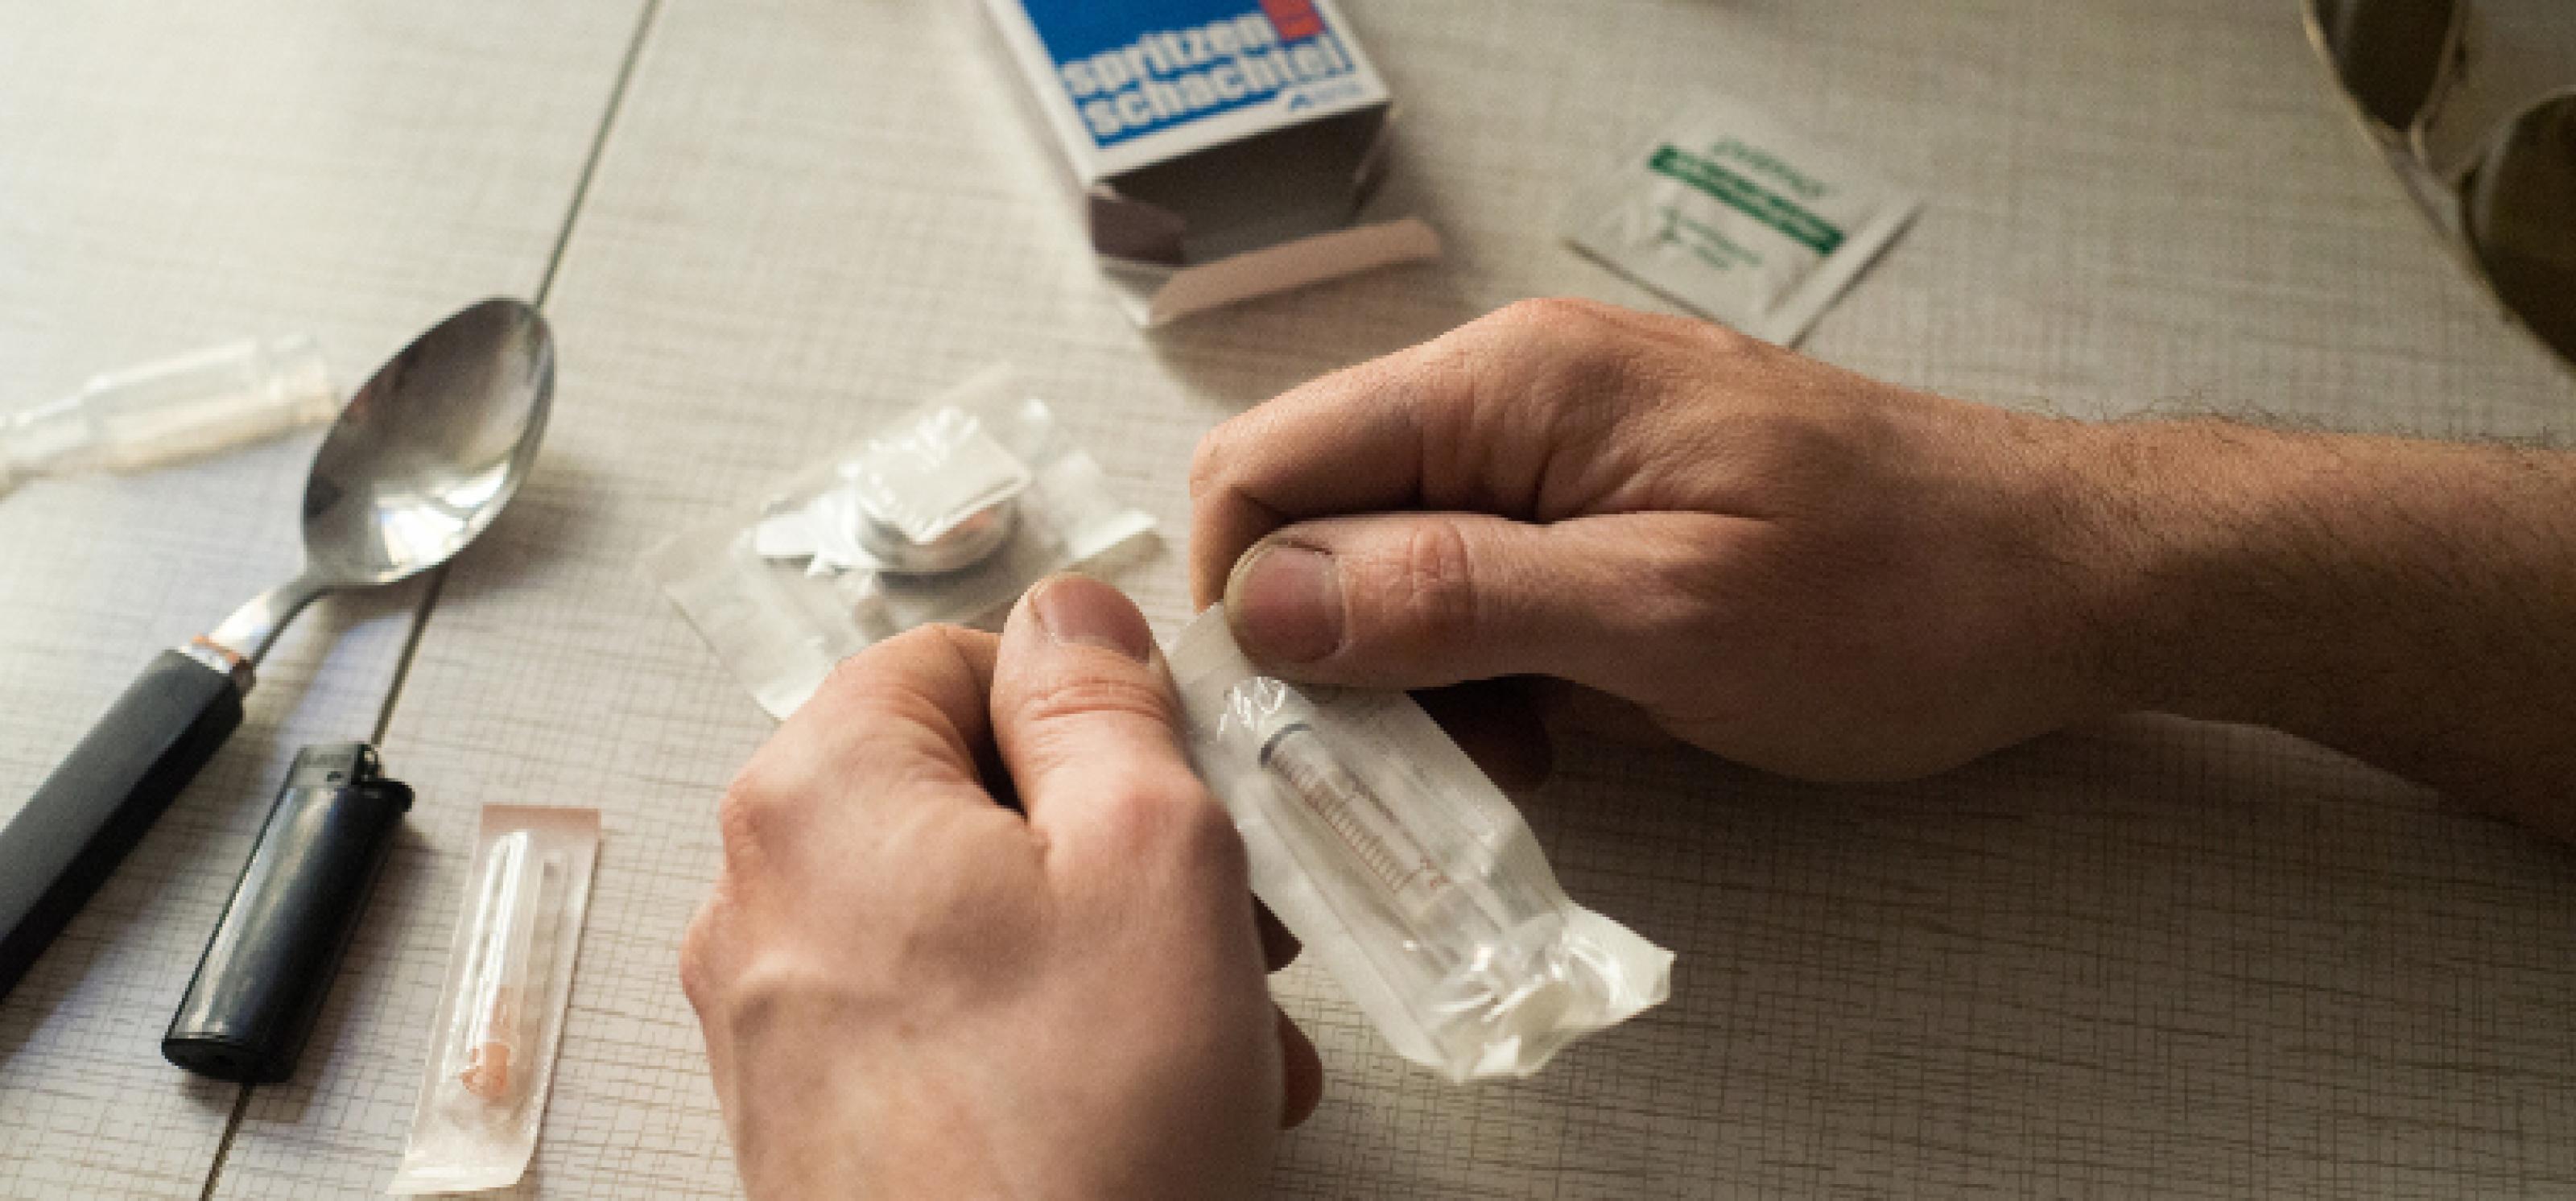 Zwei Hände öffnen die Verpackung einer steril eingepackten Spritze für Safer Use